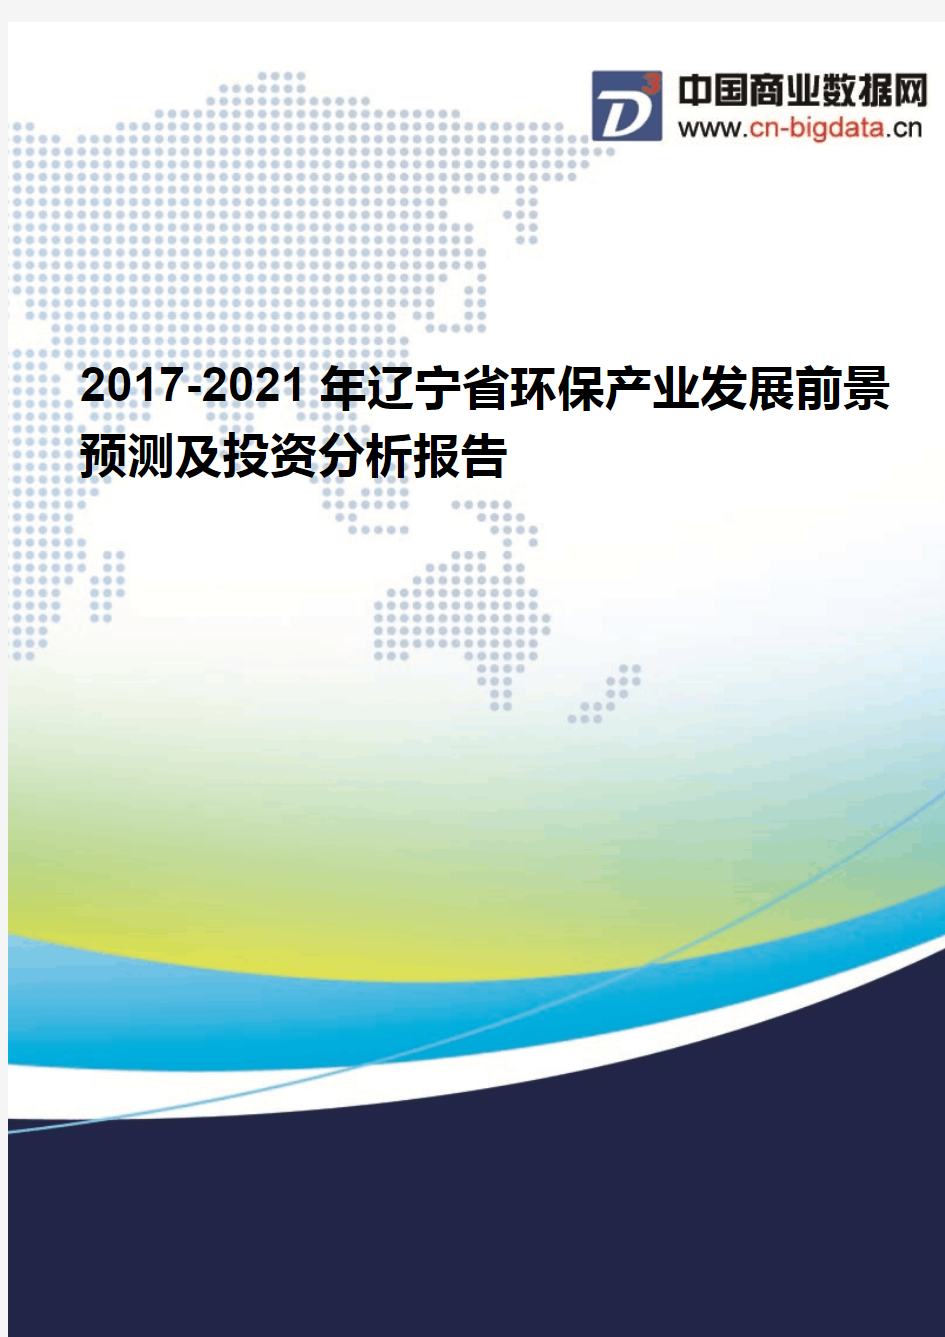 2017-2021年辽宁省环保产业发展前景预测及投资分析报告